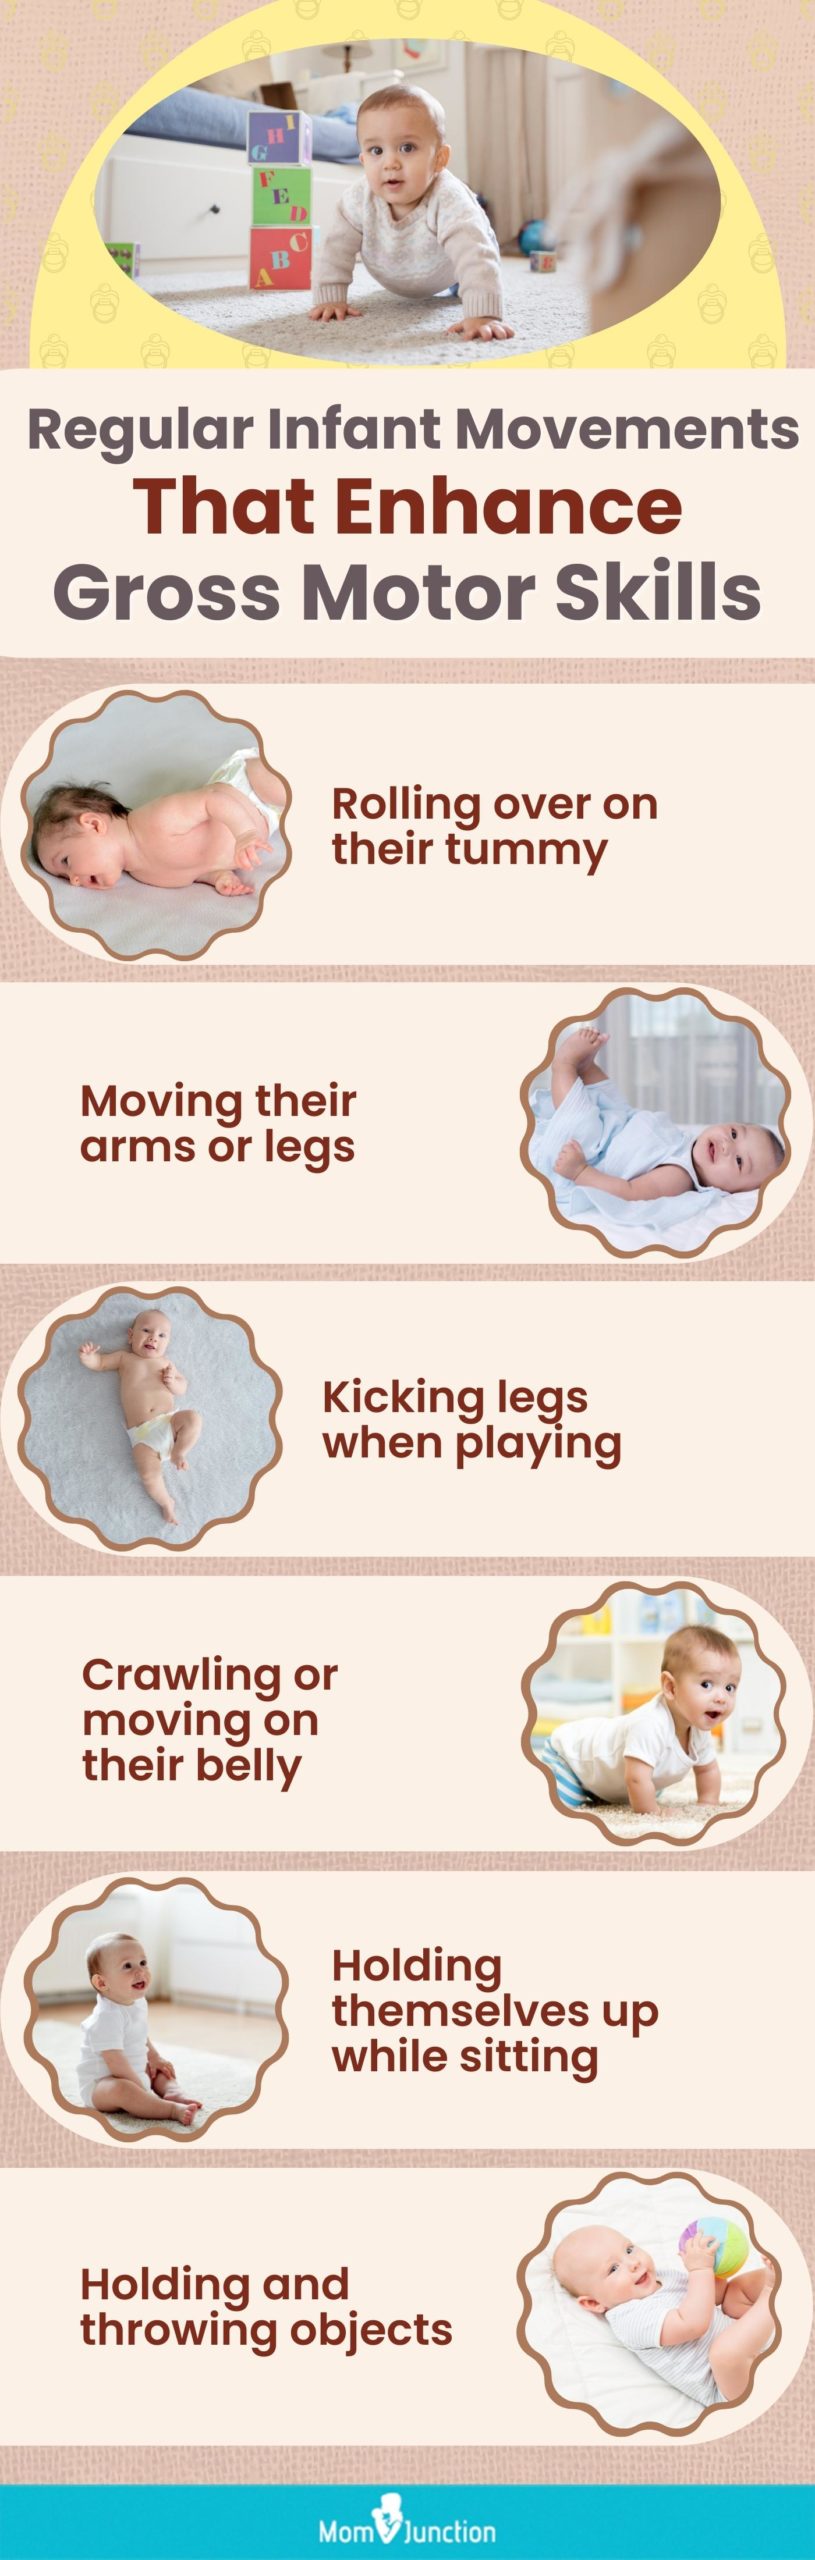 regular infant movements that enhance gross motor skills [infographic]